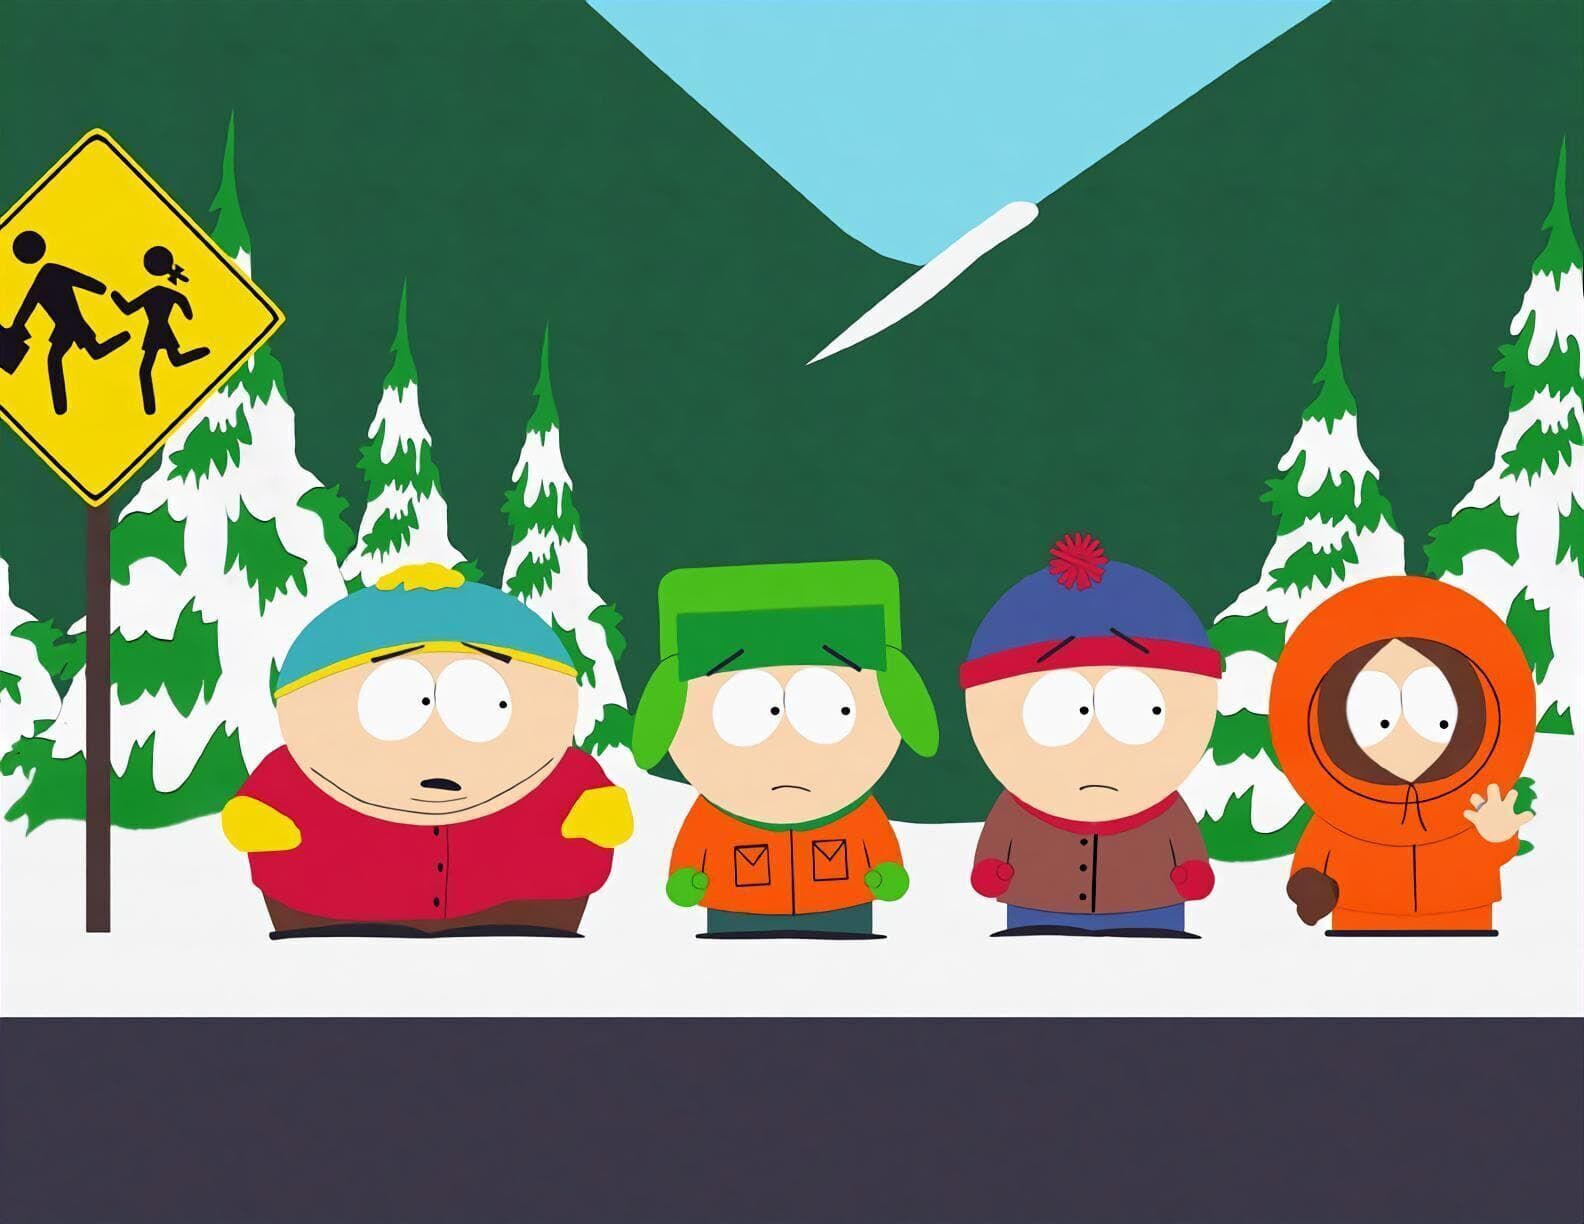 South Park - Ike's Wee Wee